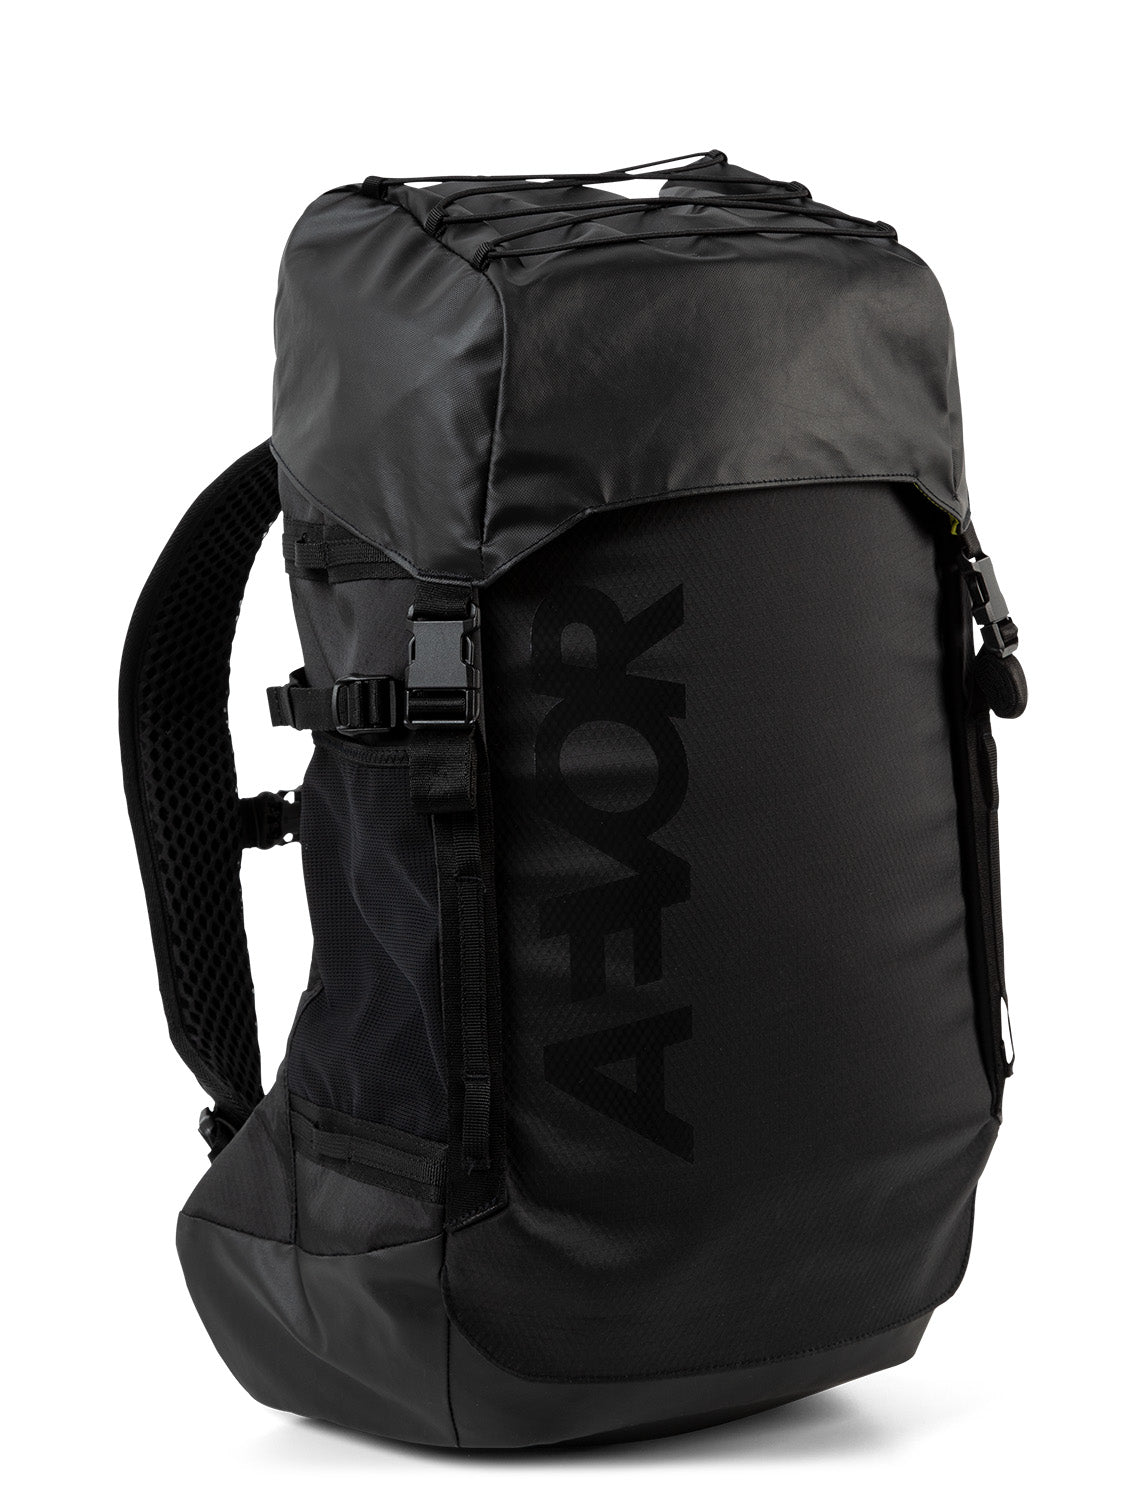 AEVOR-backpack-Explore-Pack-Proof-Black-side